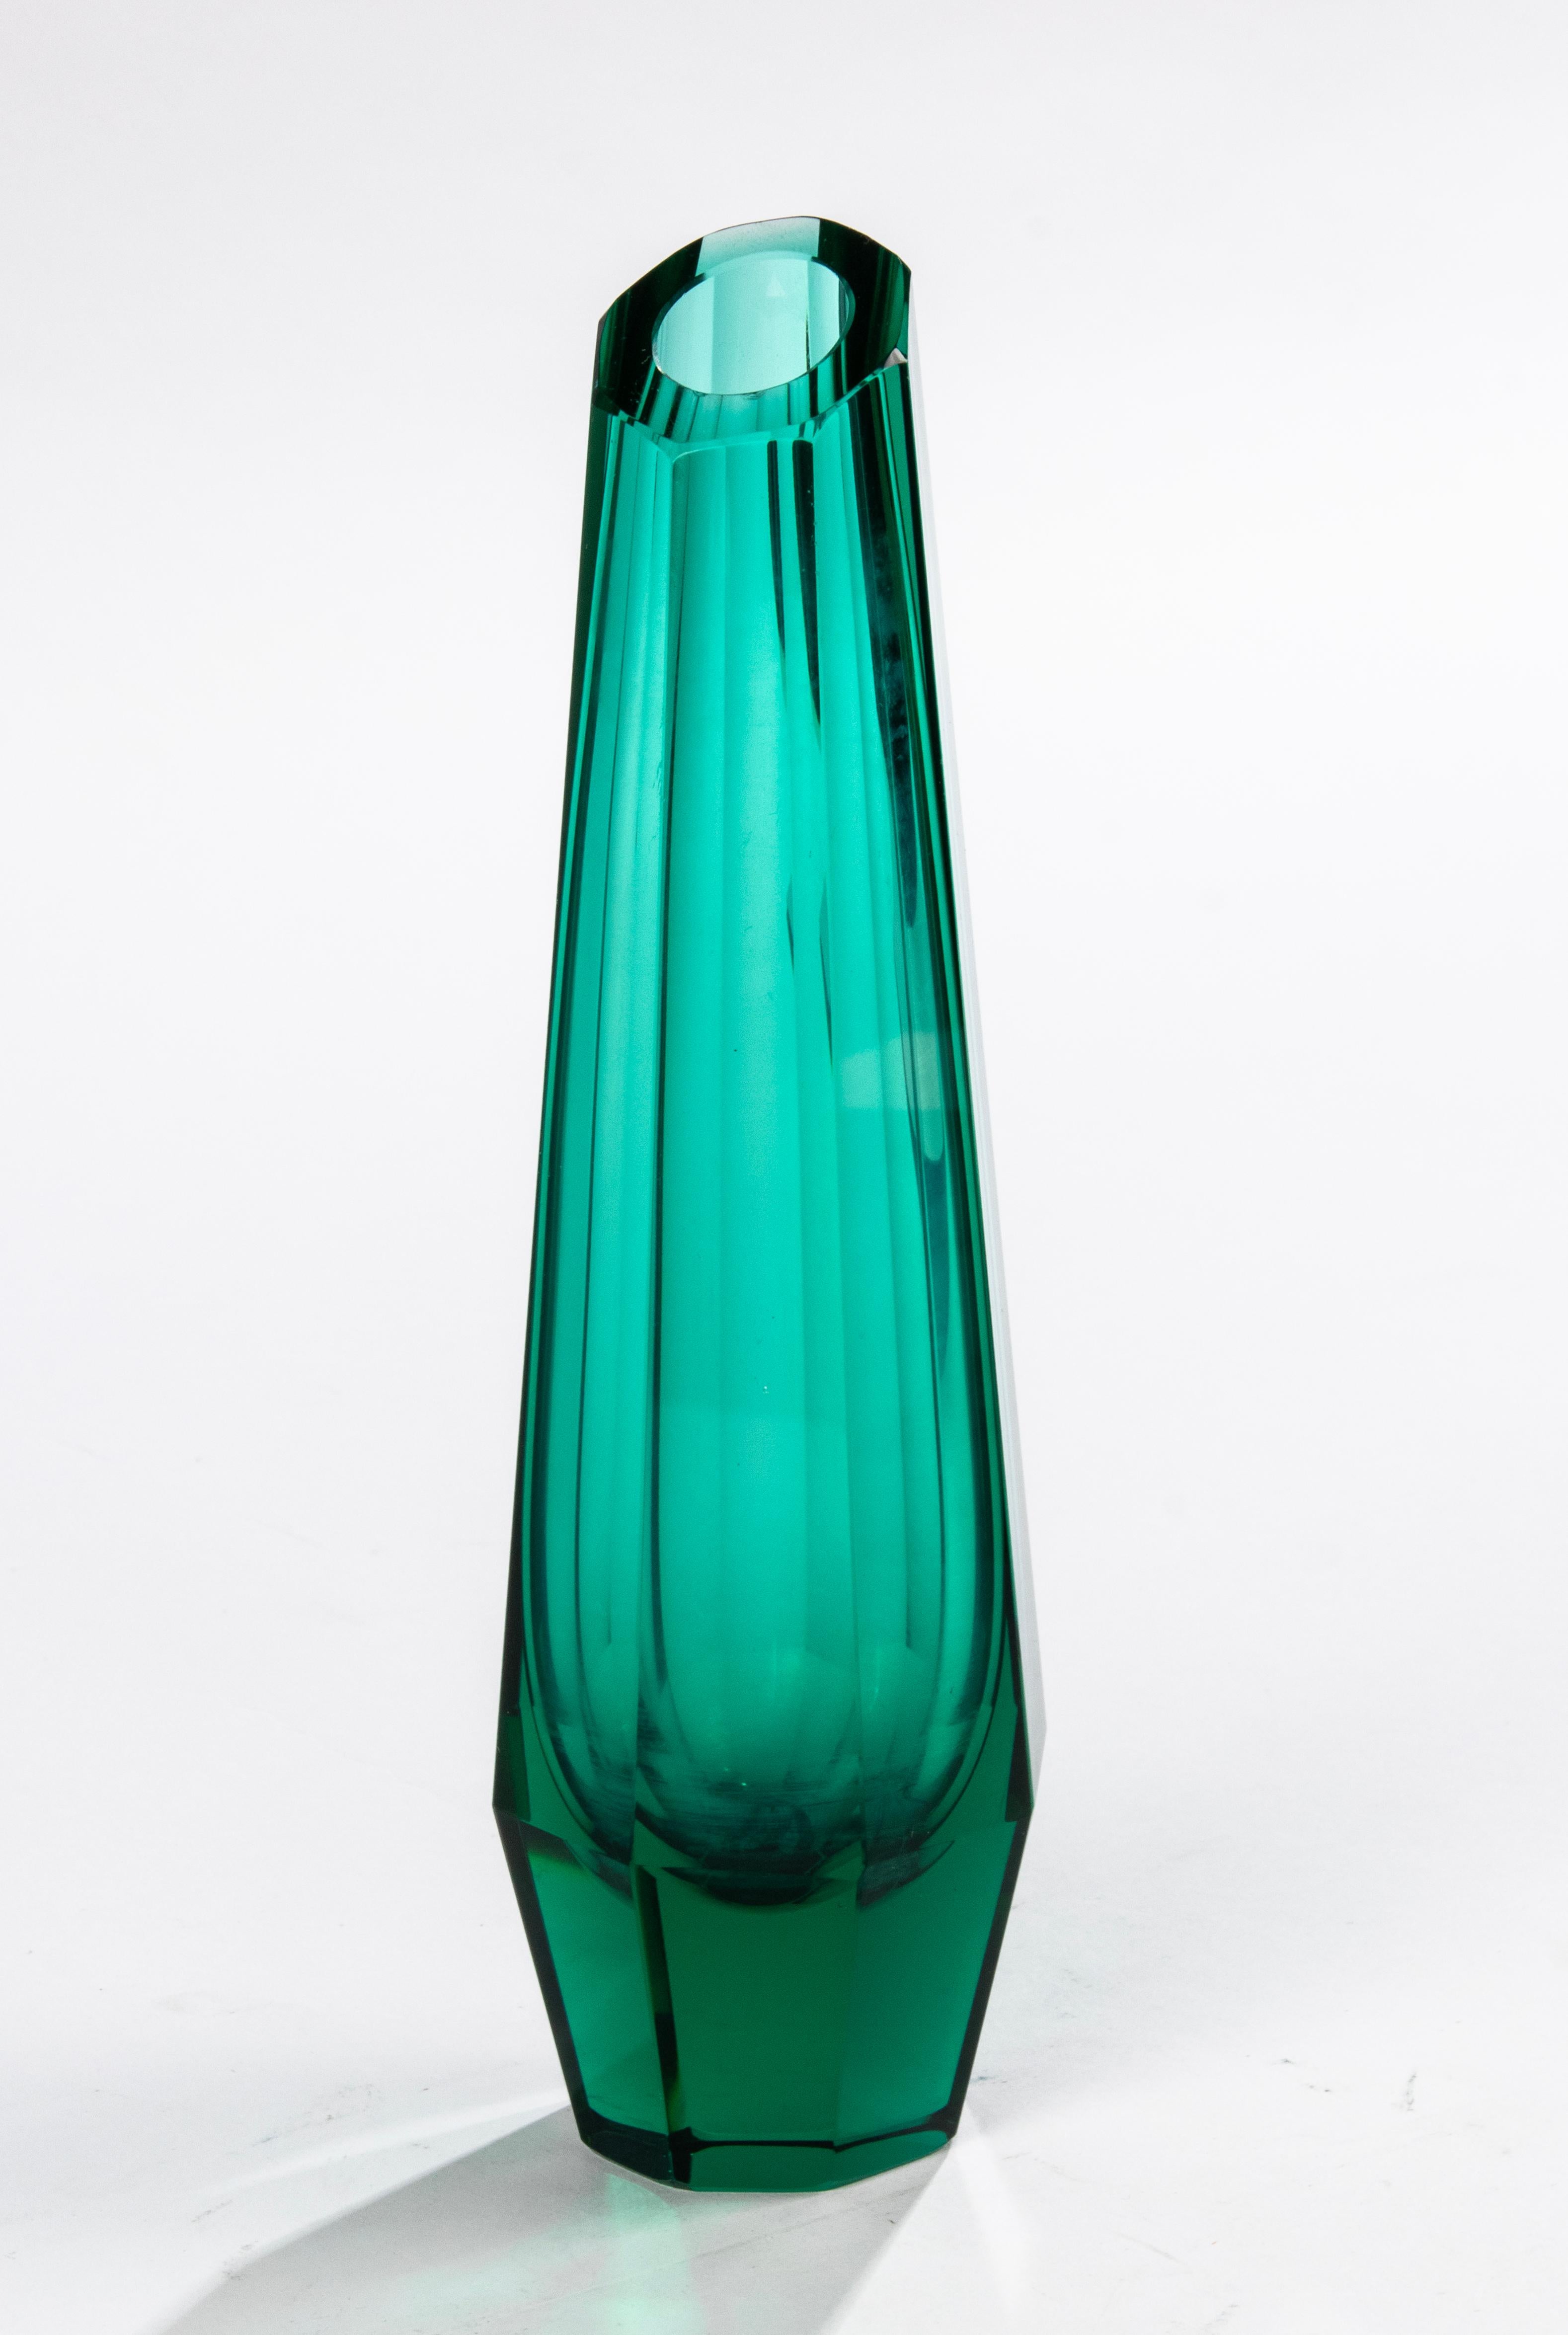 Schöne Vase aus facettiertem Kristall im Art déco-Stil, Josef Hoffmann für Moser (Tschechoslowakei, 1930er Jahre) zugeschrieben. Die Vase ist aus wunderschön facettiertem, dickem smaragd- und waldgrünem Kristallglas gefertigt.
Die Vase ist in sehr